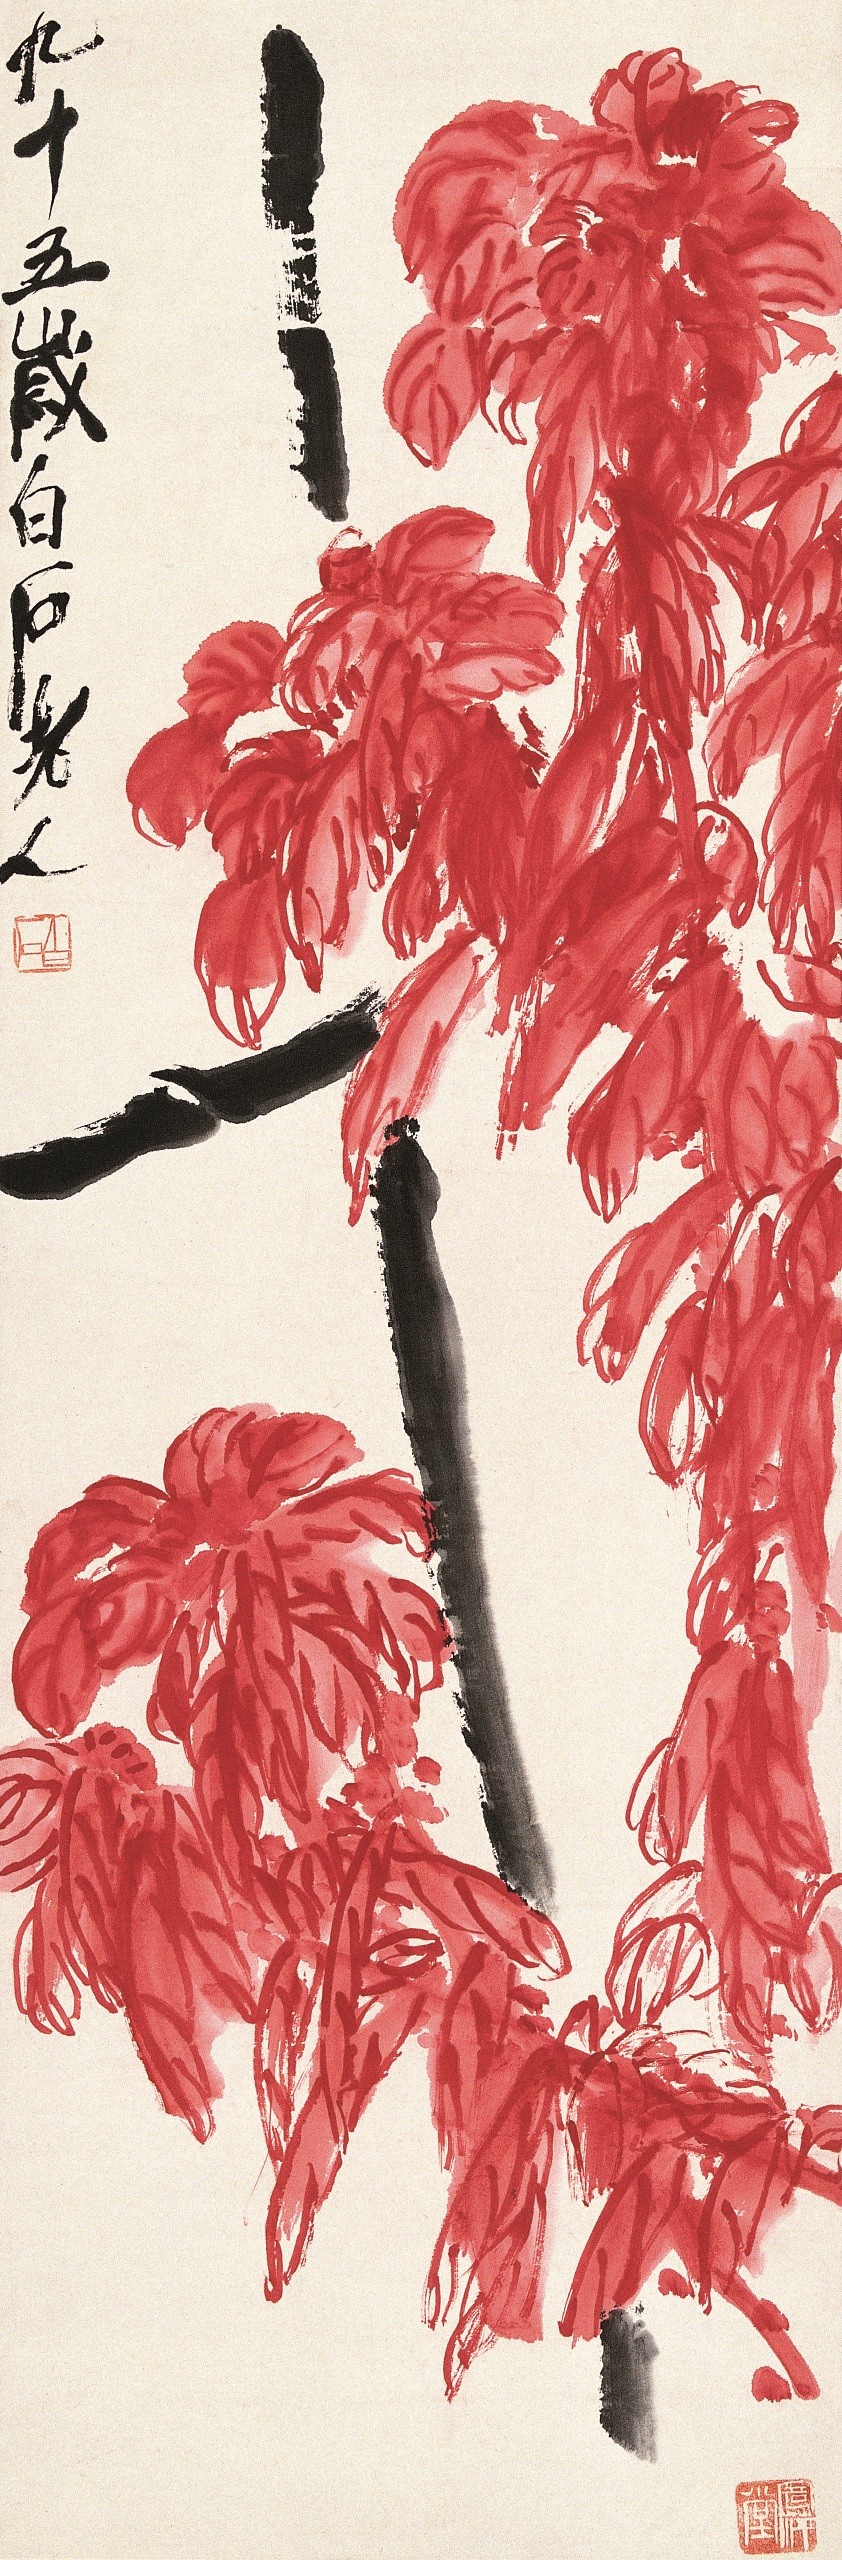 中国美術 白石墨妙 1959年2月発行 水印画集